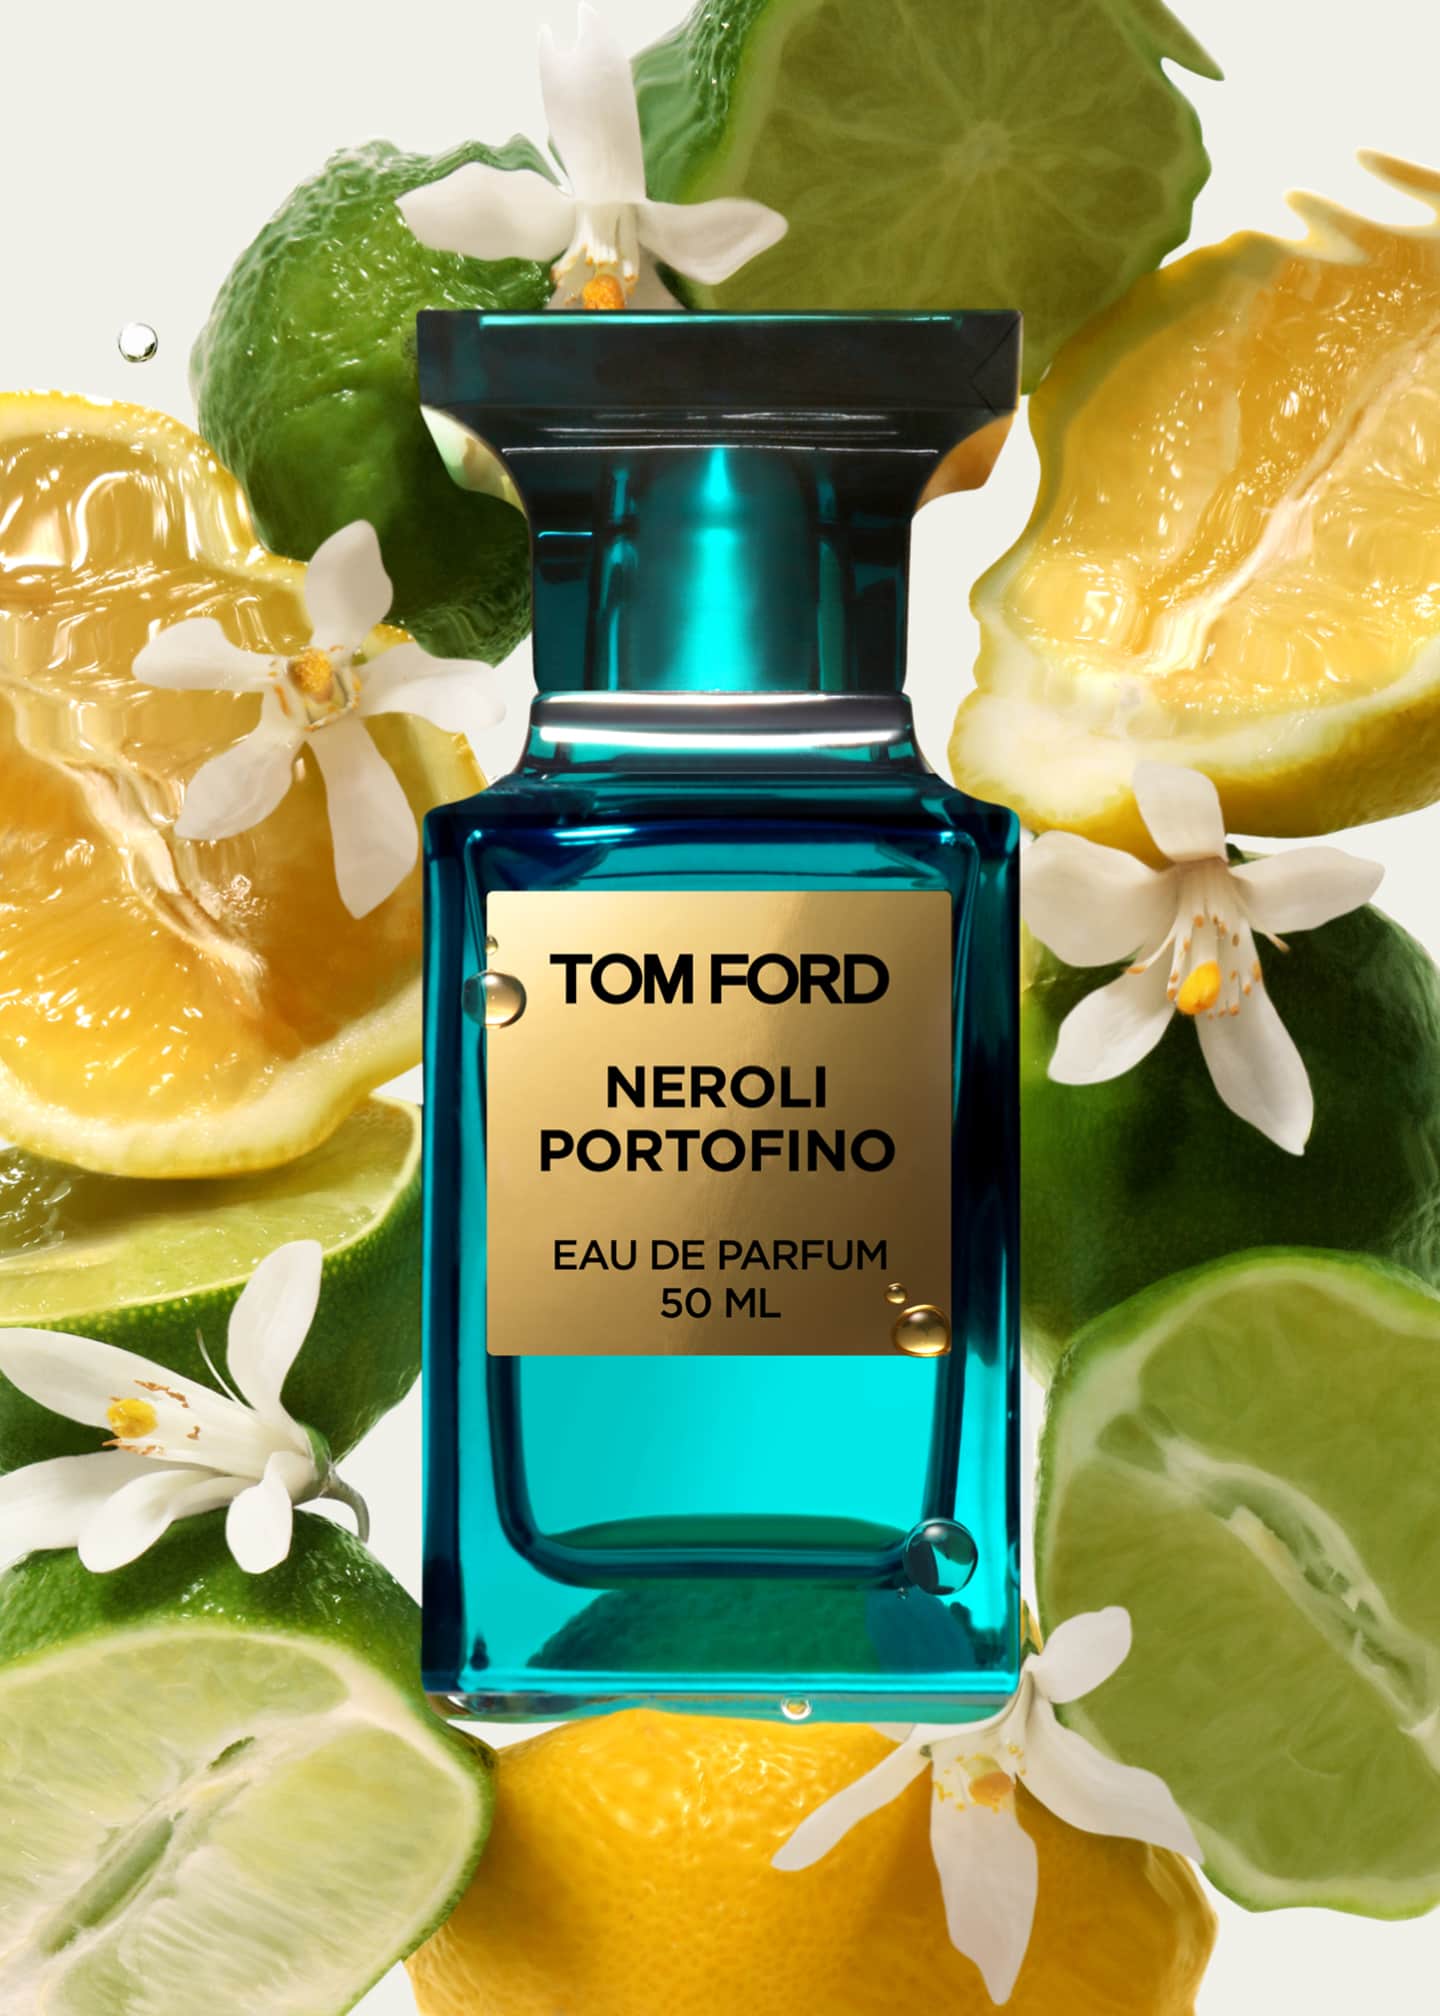 TOM FORD Neroli Portofino Eau de Parfum Fragrance, 1.7 oz - Bergdorf ...